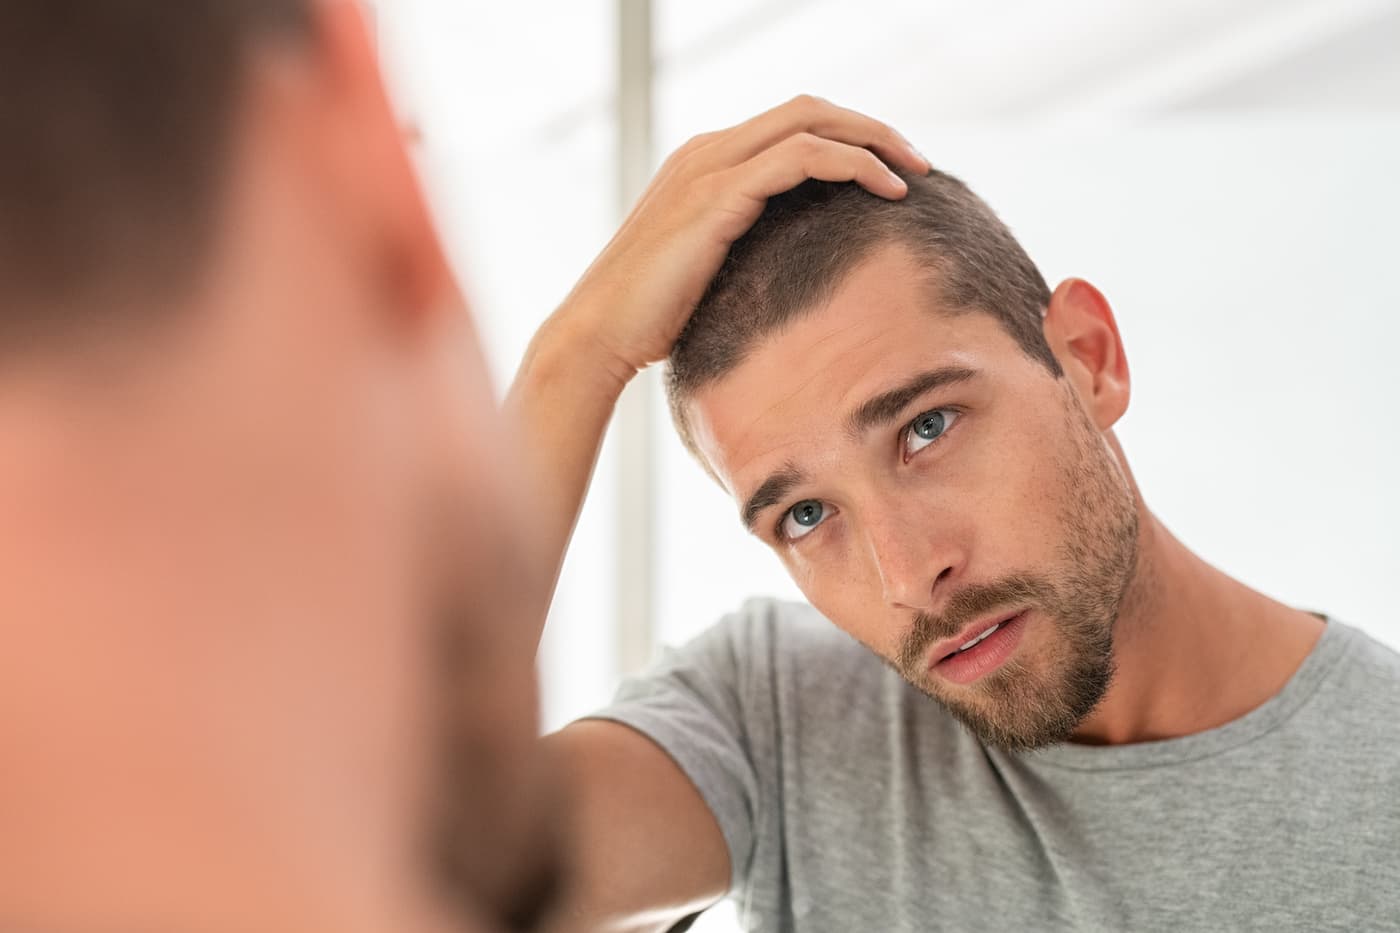 Man checks hair in mirror